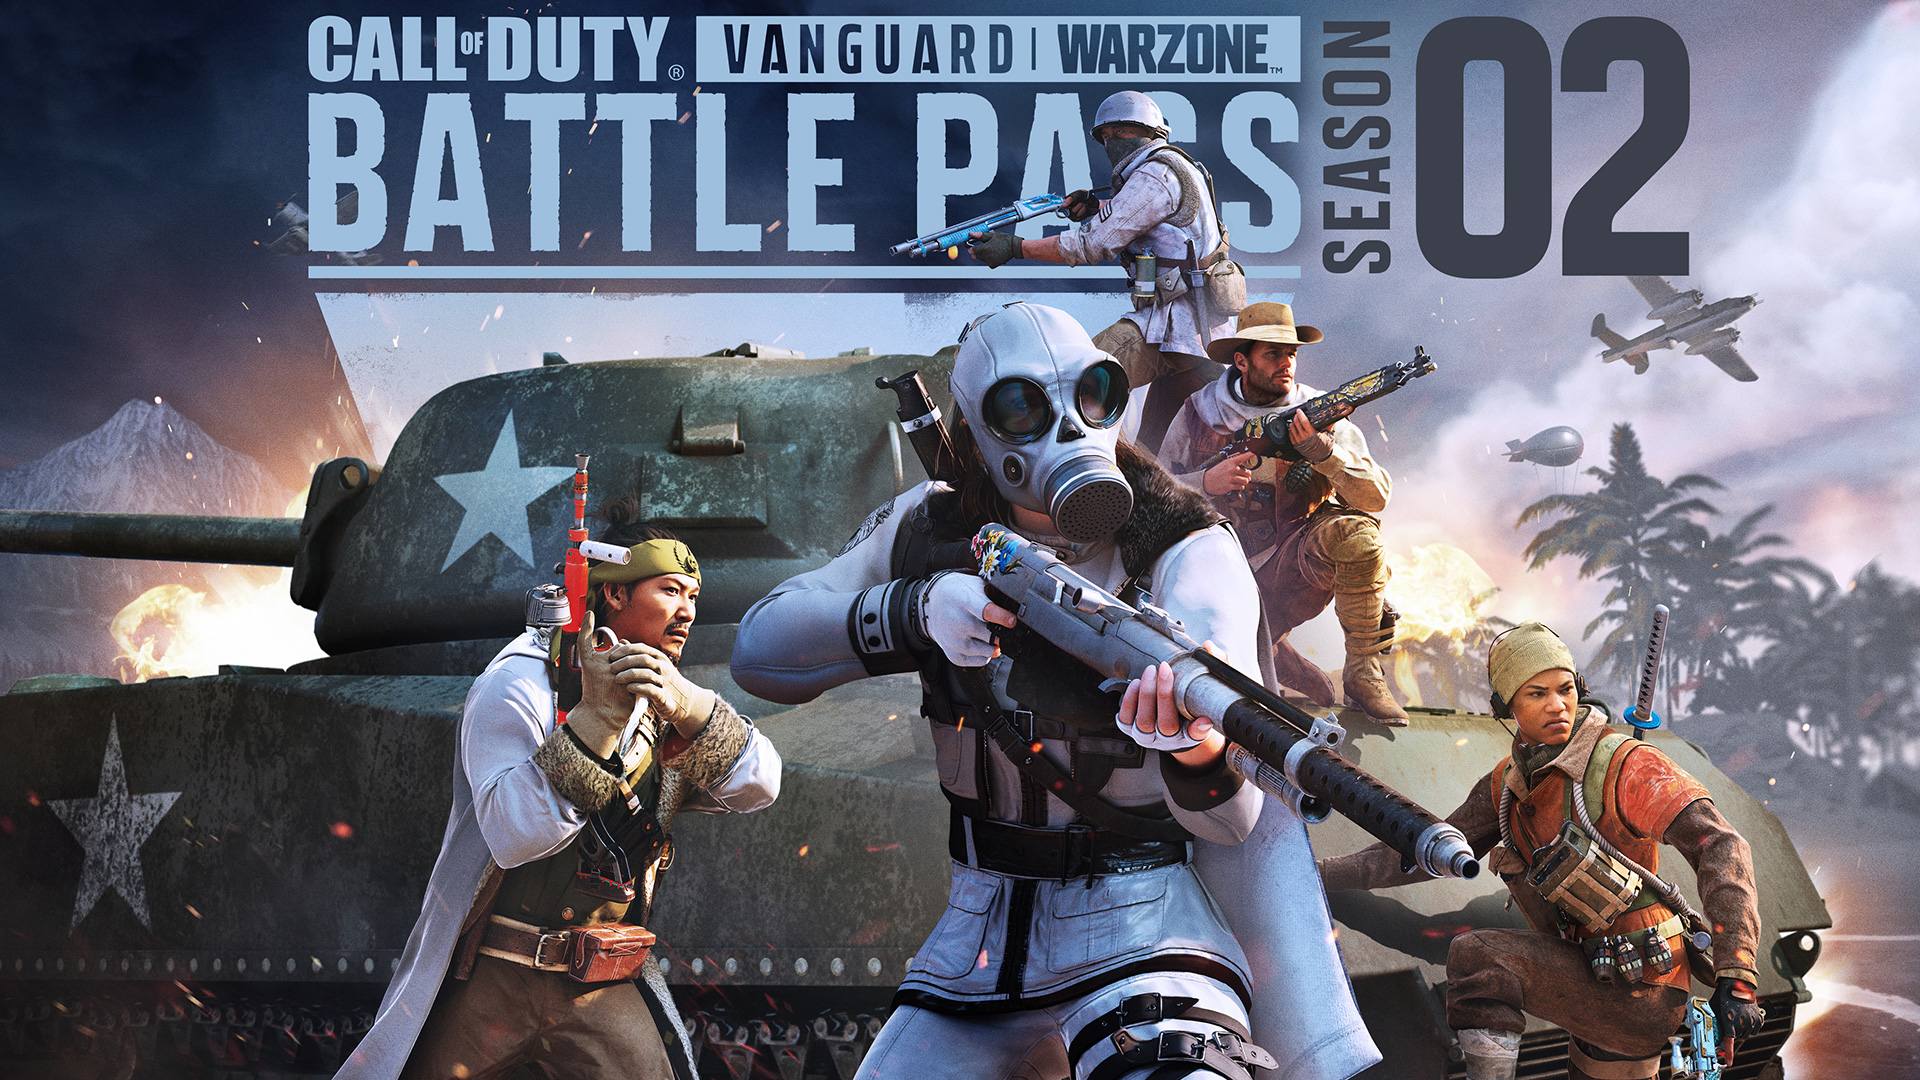 Call of Duty: Vanguard e Warzone - Battle Pass e i bundle della Stagione 2 